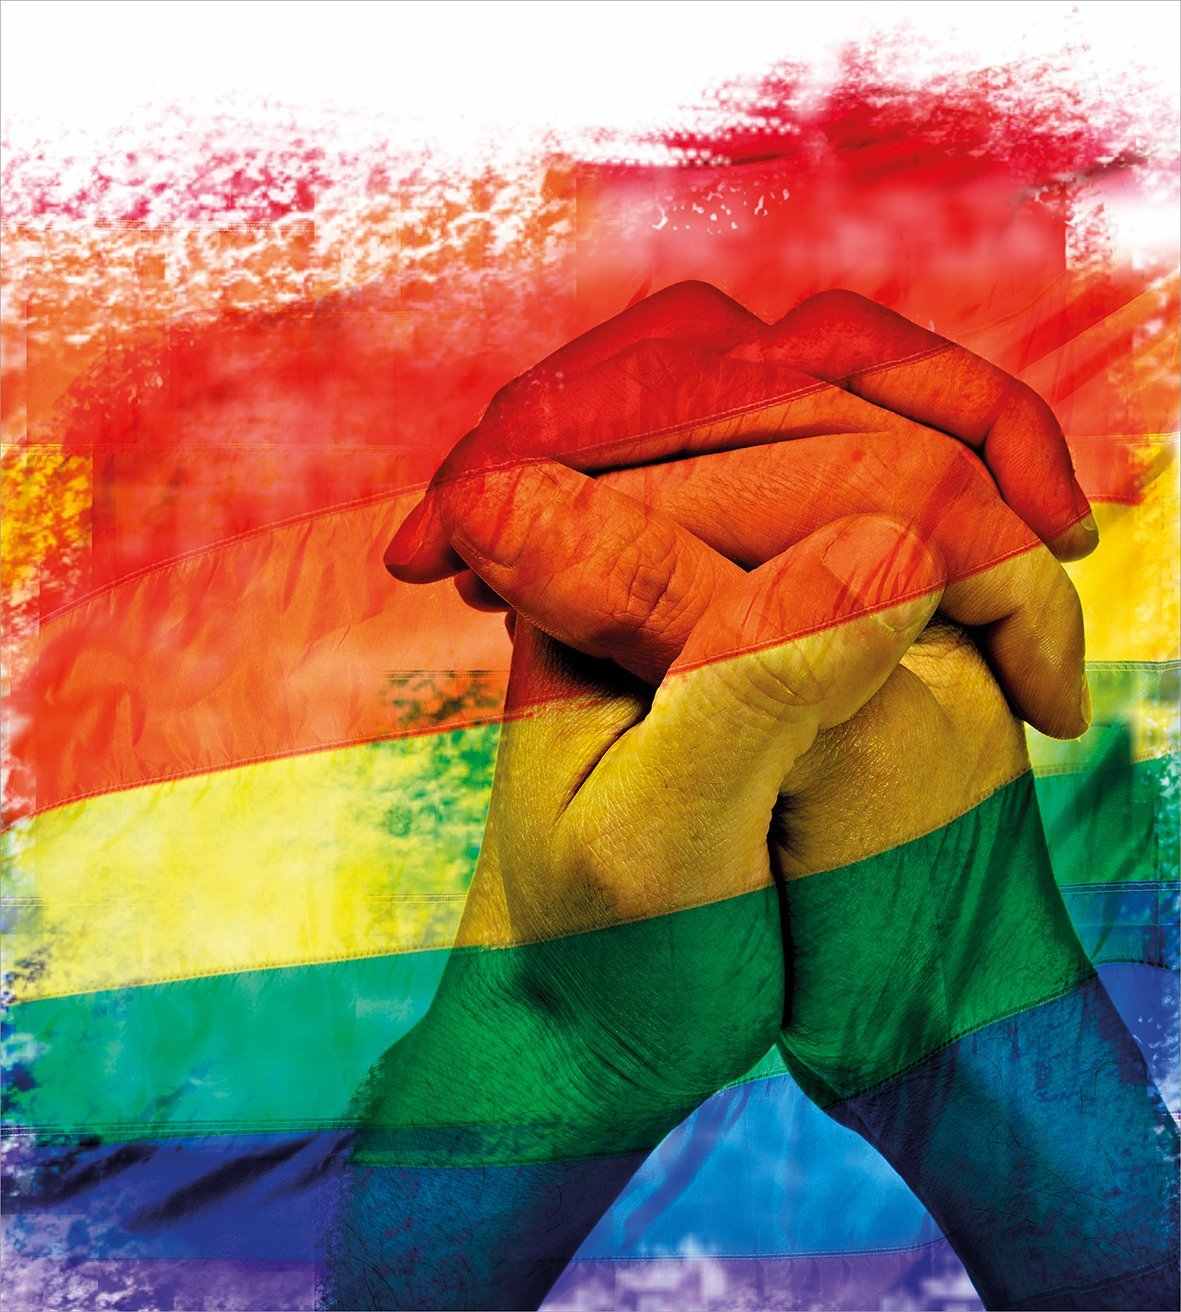 Viva el amor libre LGBT+